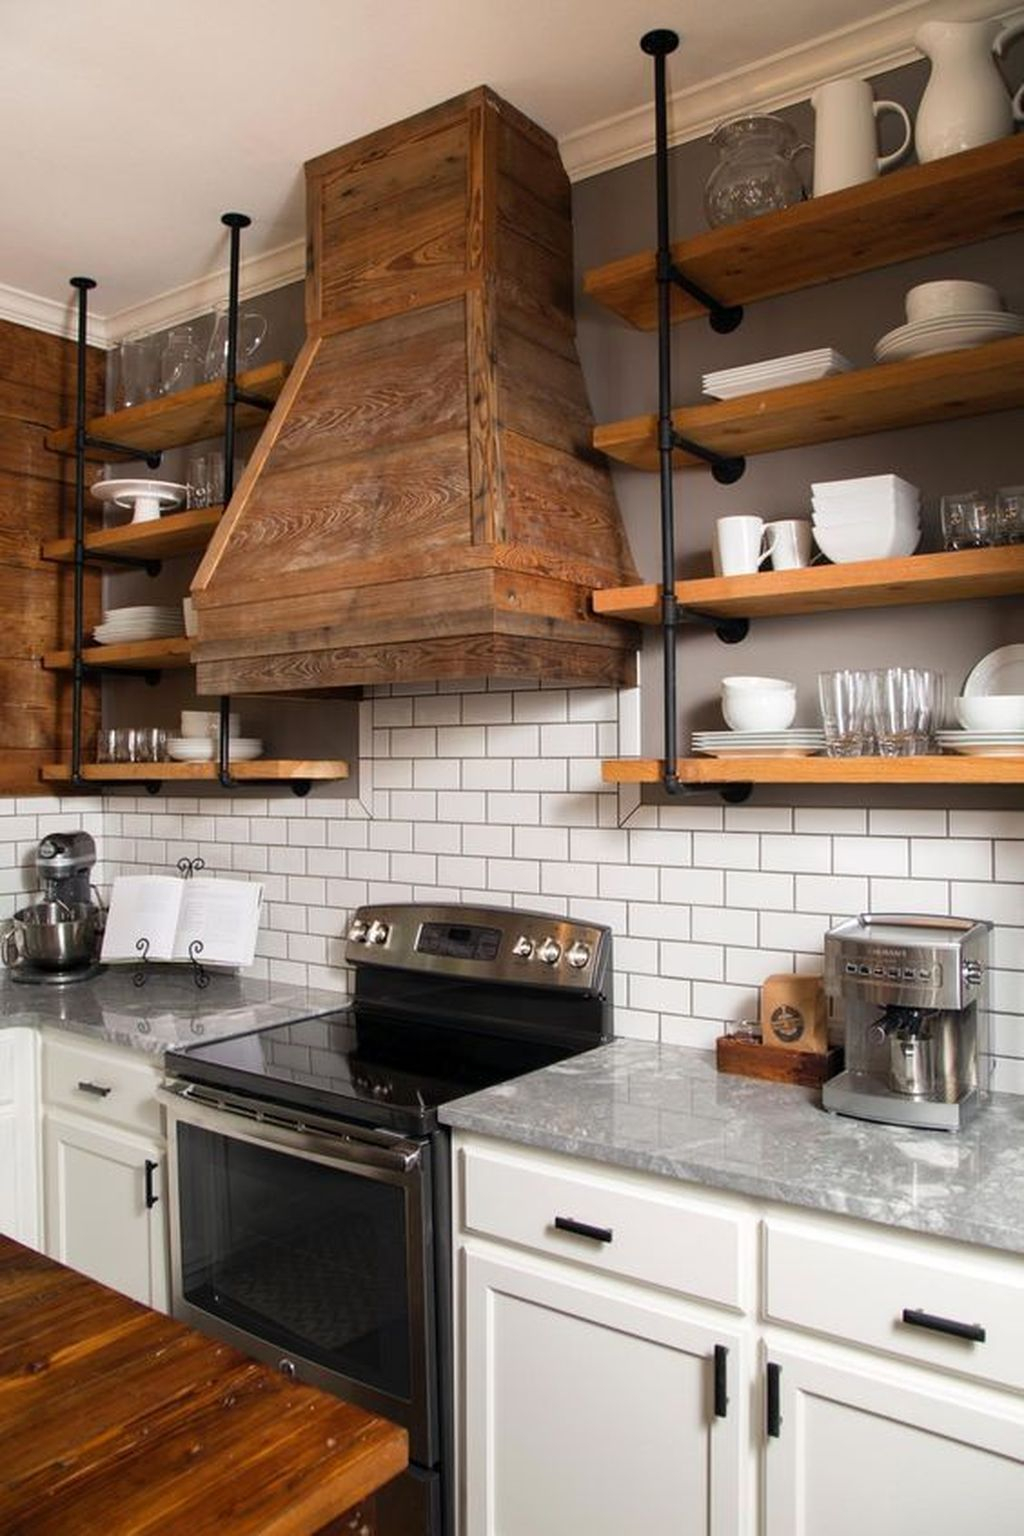 Wonderful Industrial Kitchen Shelf Design Ideas To Organize Your Kitchen08